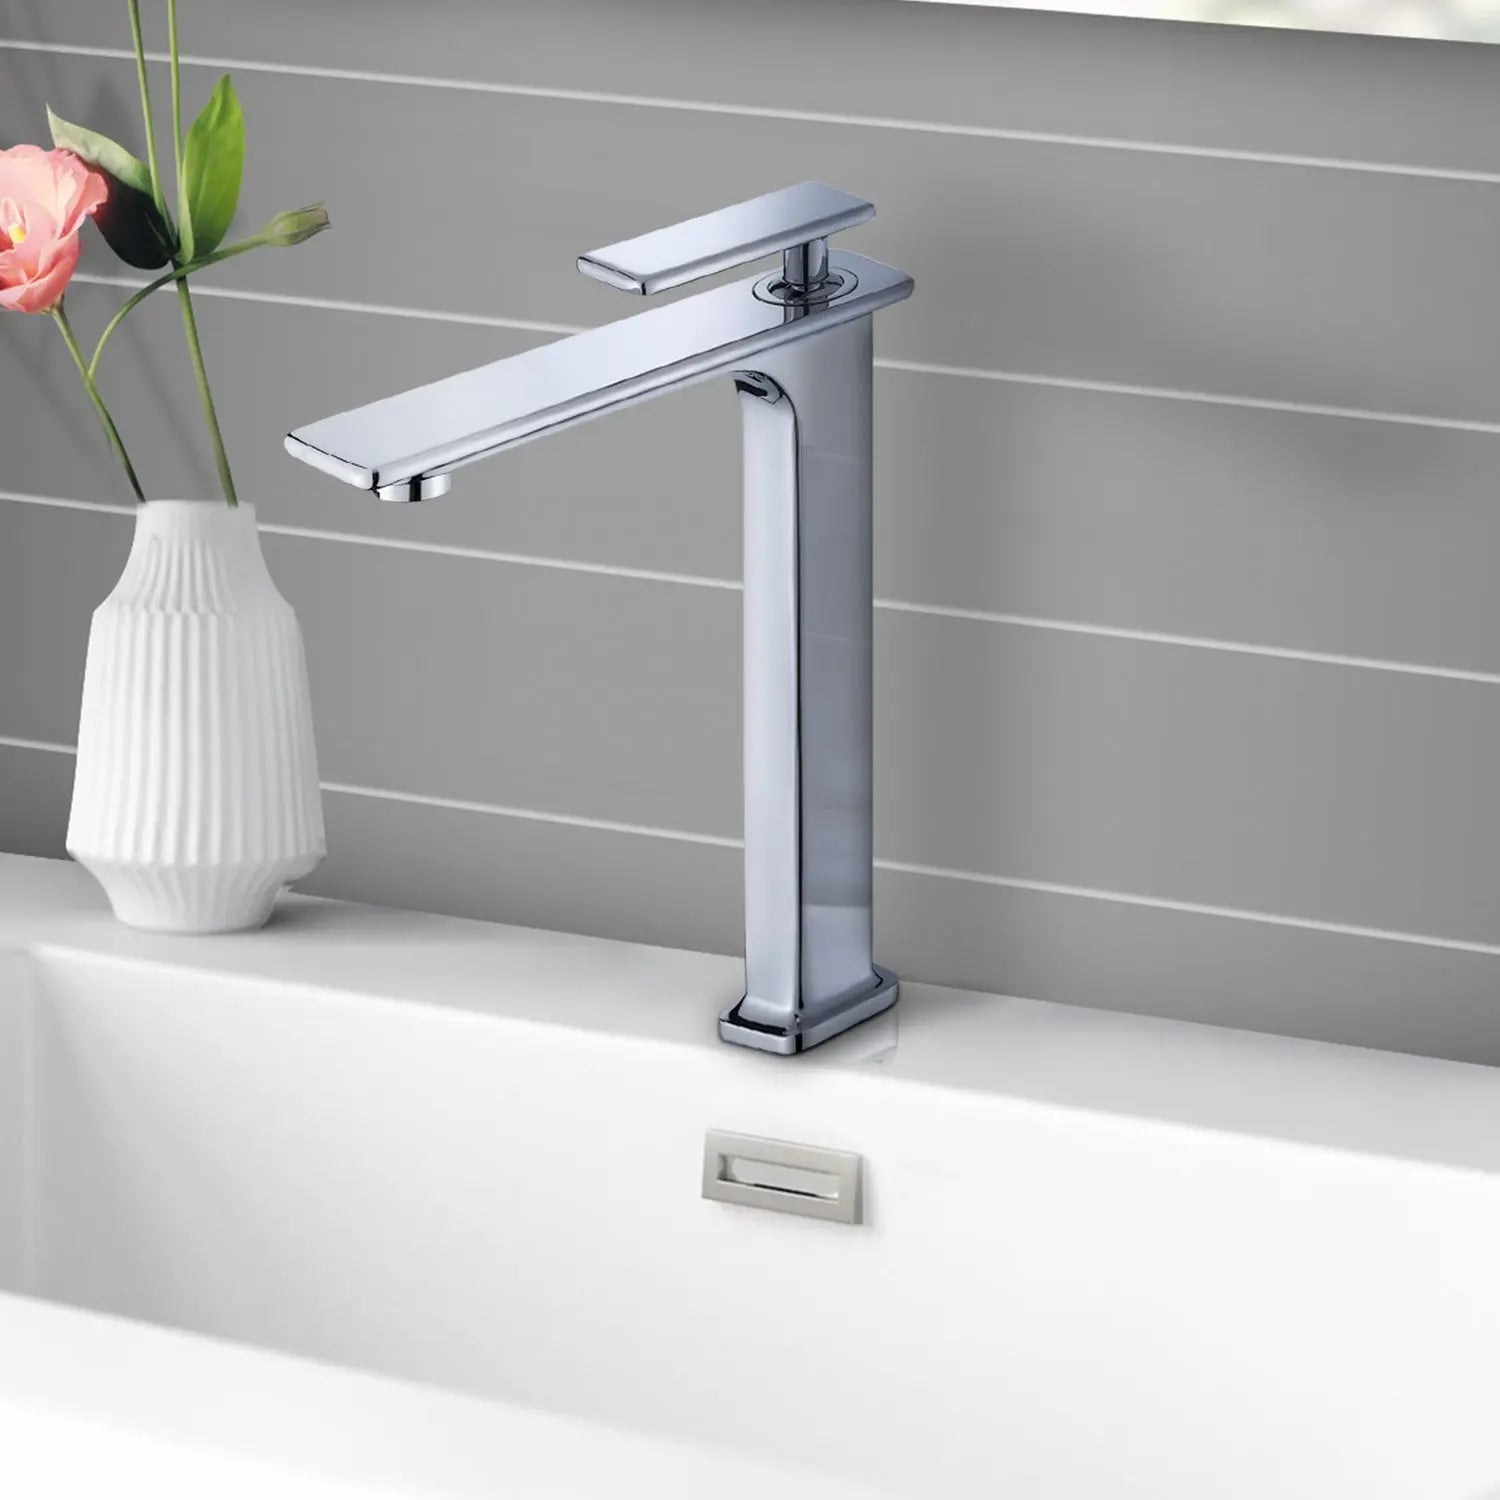 Single-Handle Single-Hole Bathroom Basin Faucet - larahd